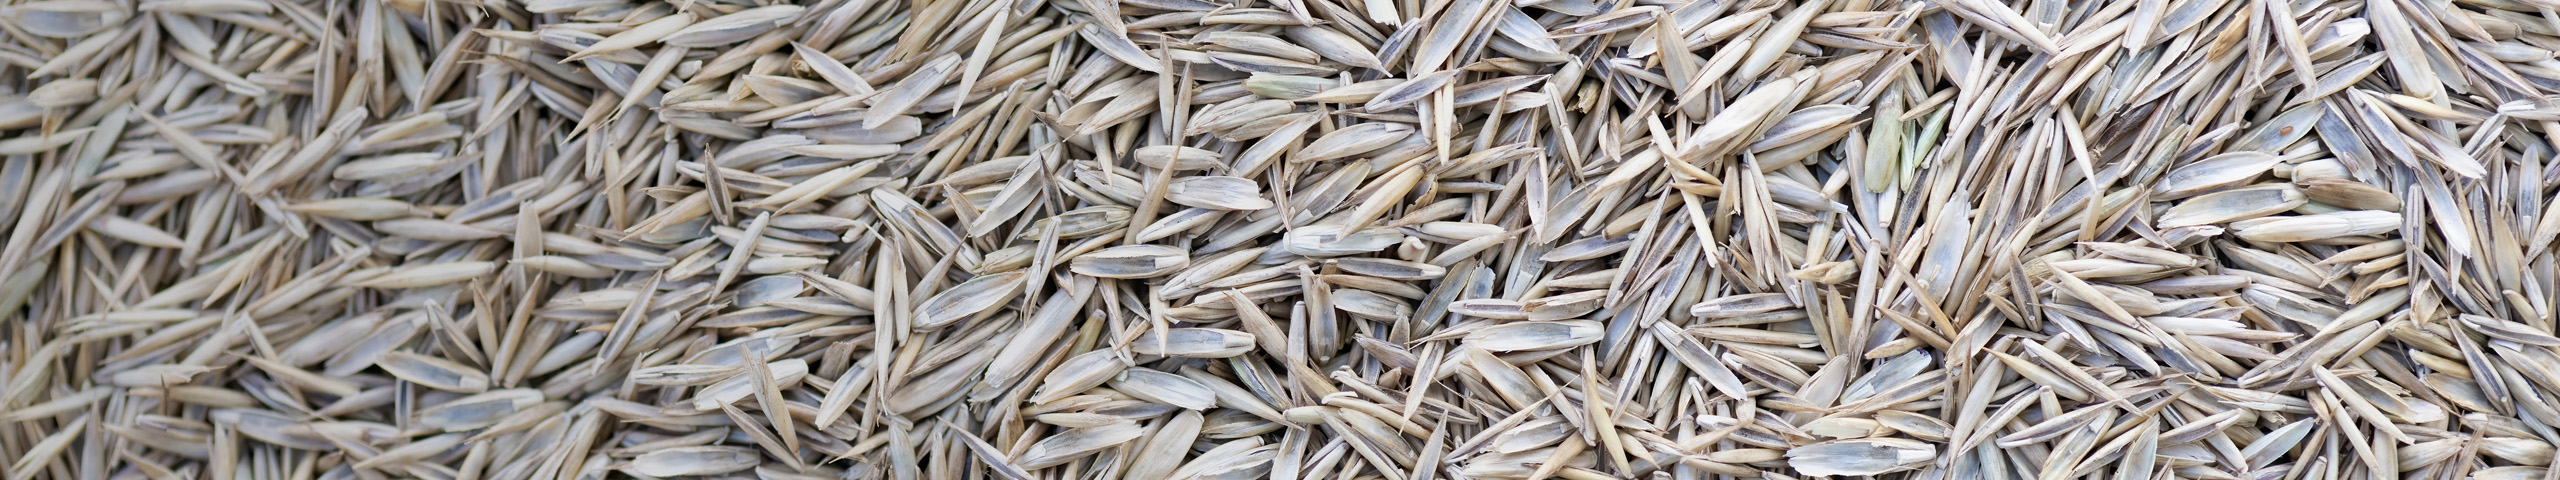 Close up of ryegrass seeds